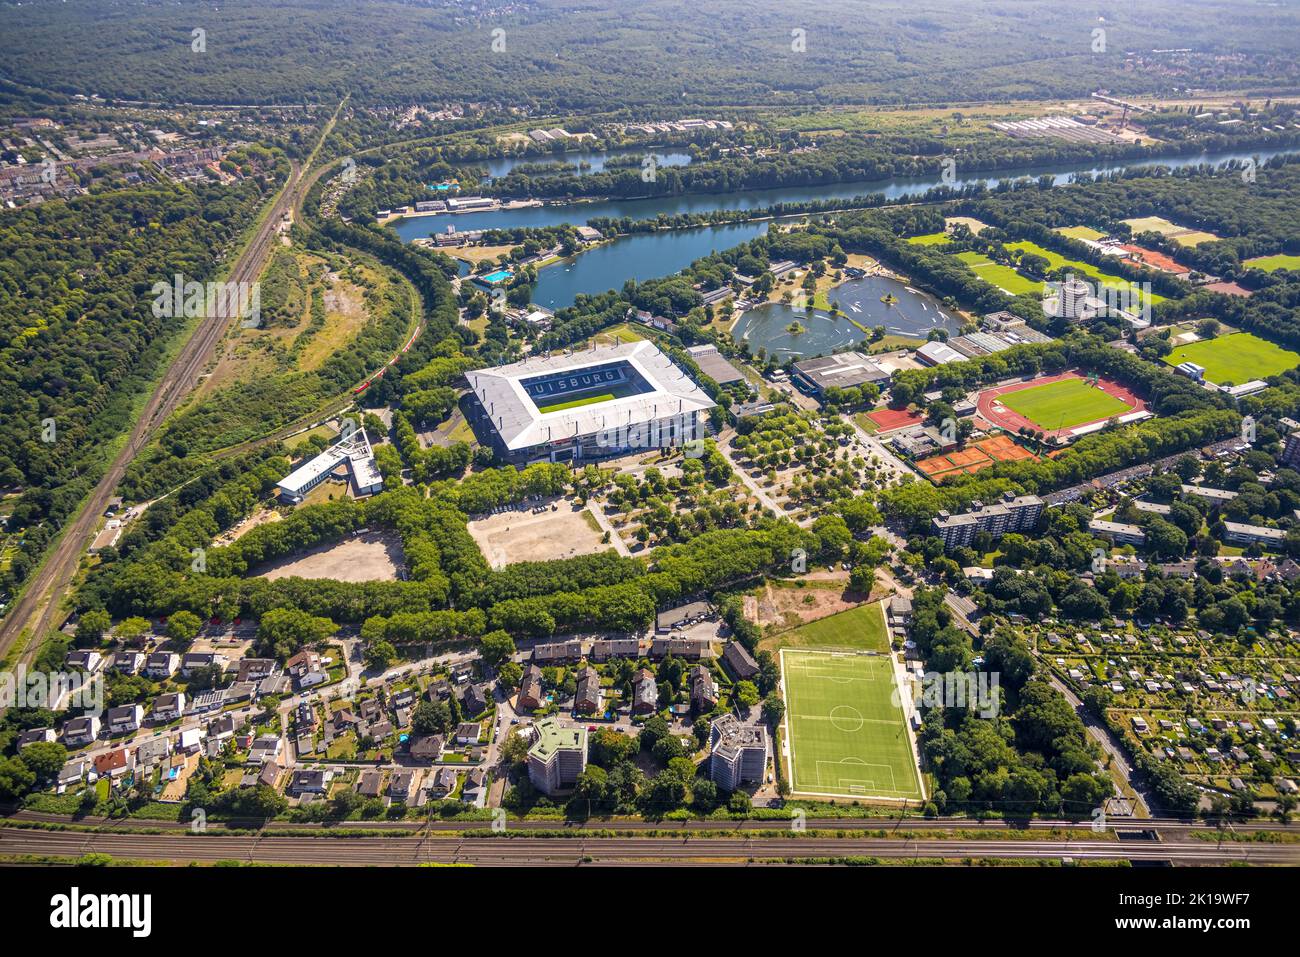 Aerial view, MSV Arena, Schauinsland-Reisen-Arena, soccer stadium, Sportpark Duisburg, regatta track, Neudorf, Duisburg, Ruhr area, North Rhine-Westph Stock Photo